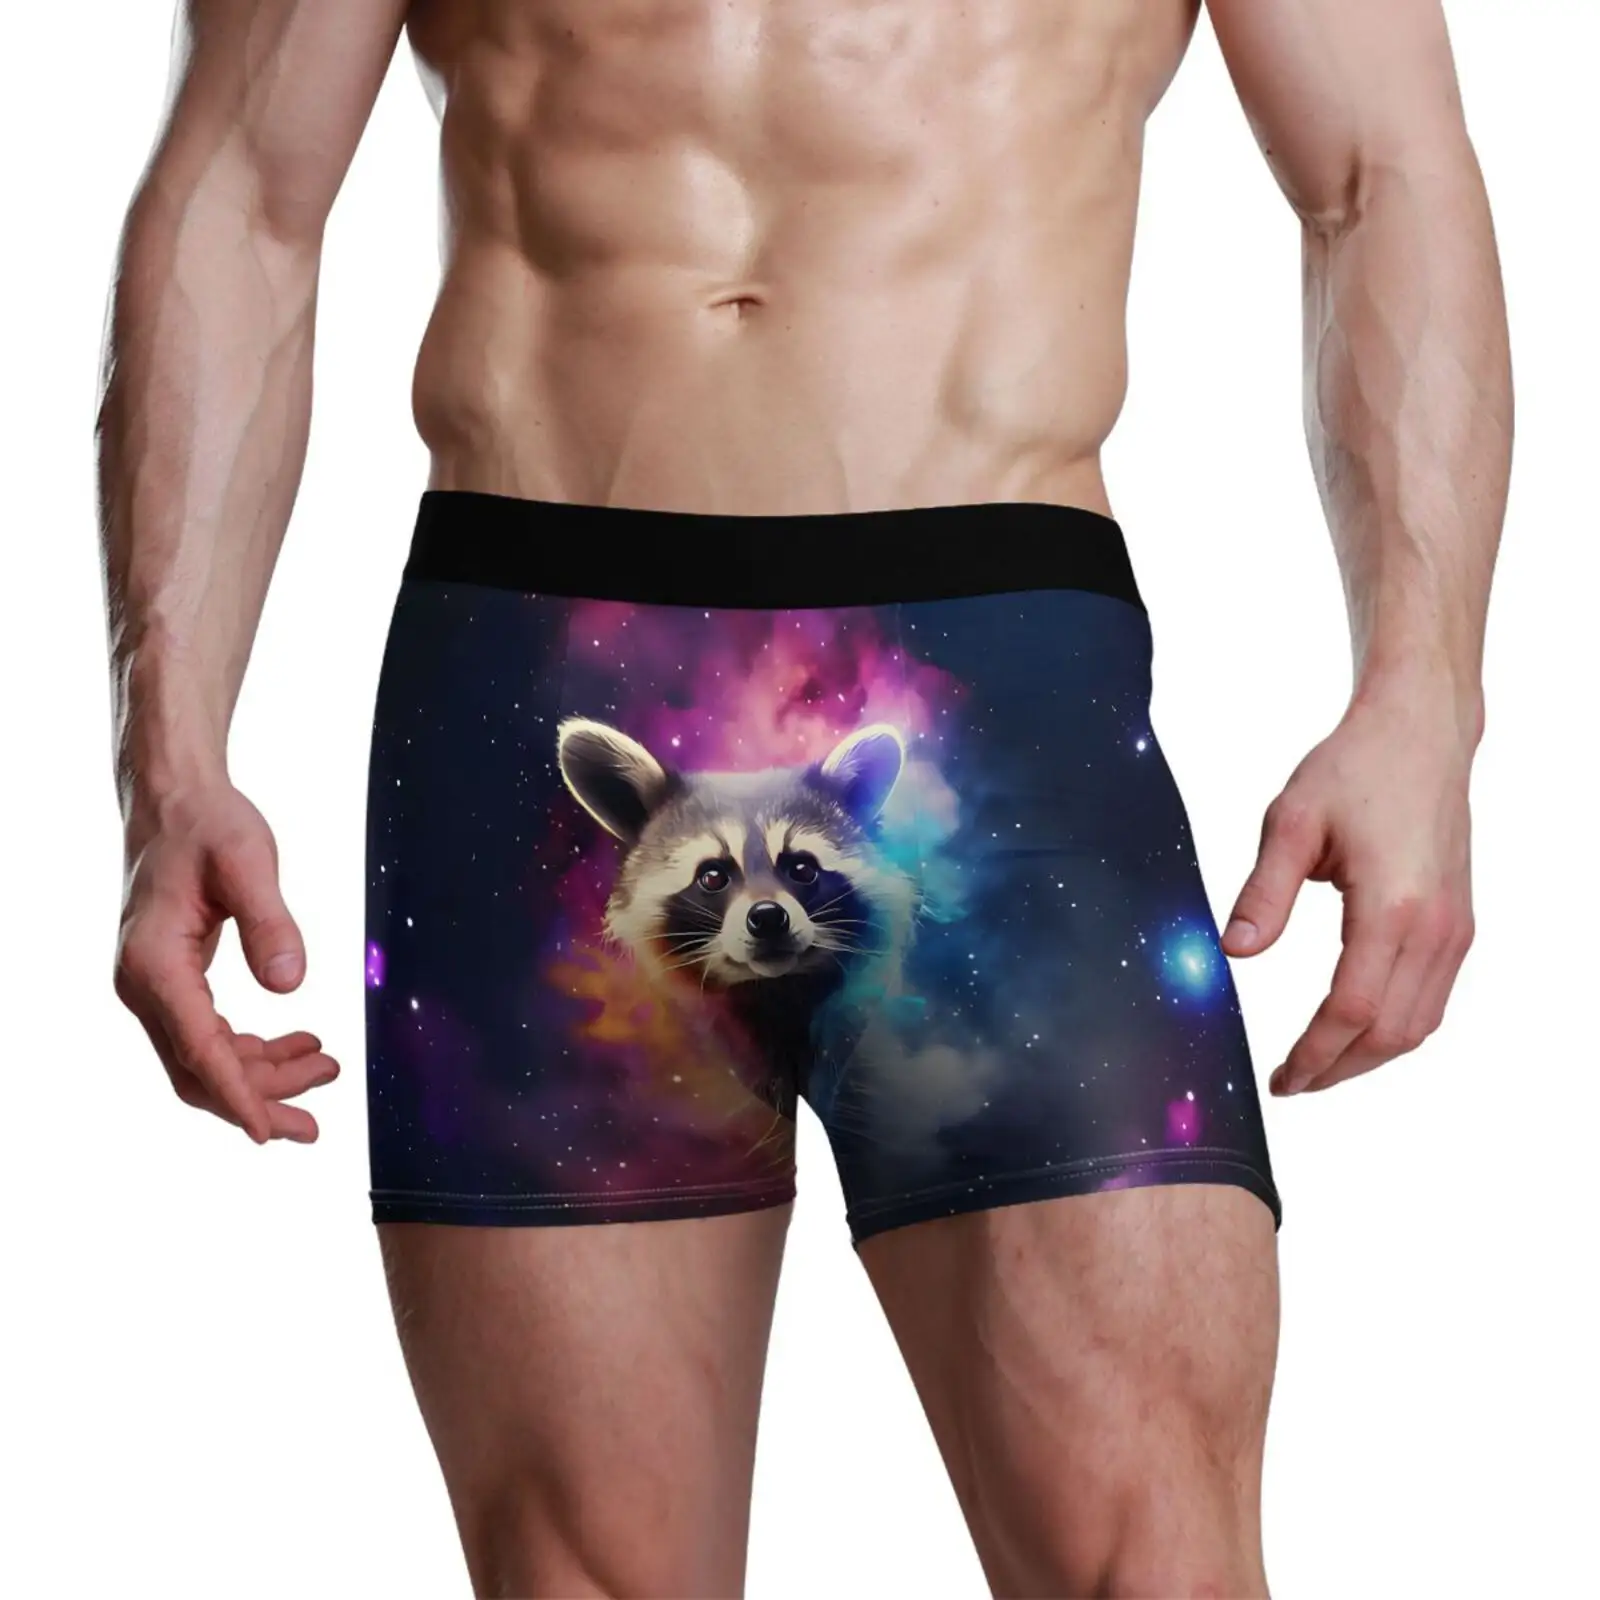 Cuecas boxer personalizadas para homens, cuecas boxer básicas plus size, novidade sexy